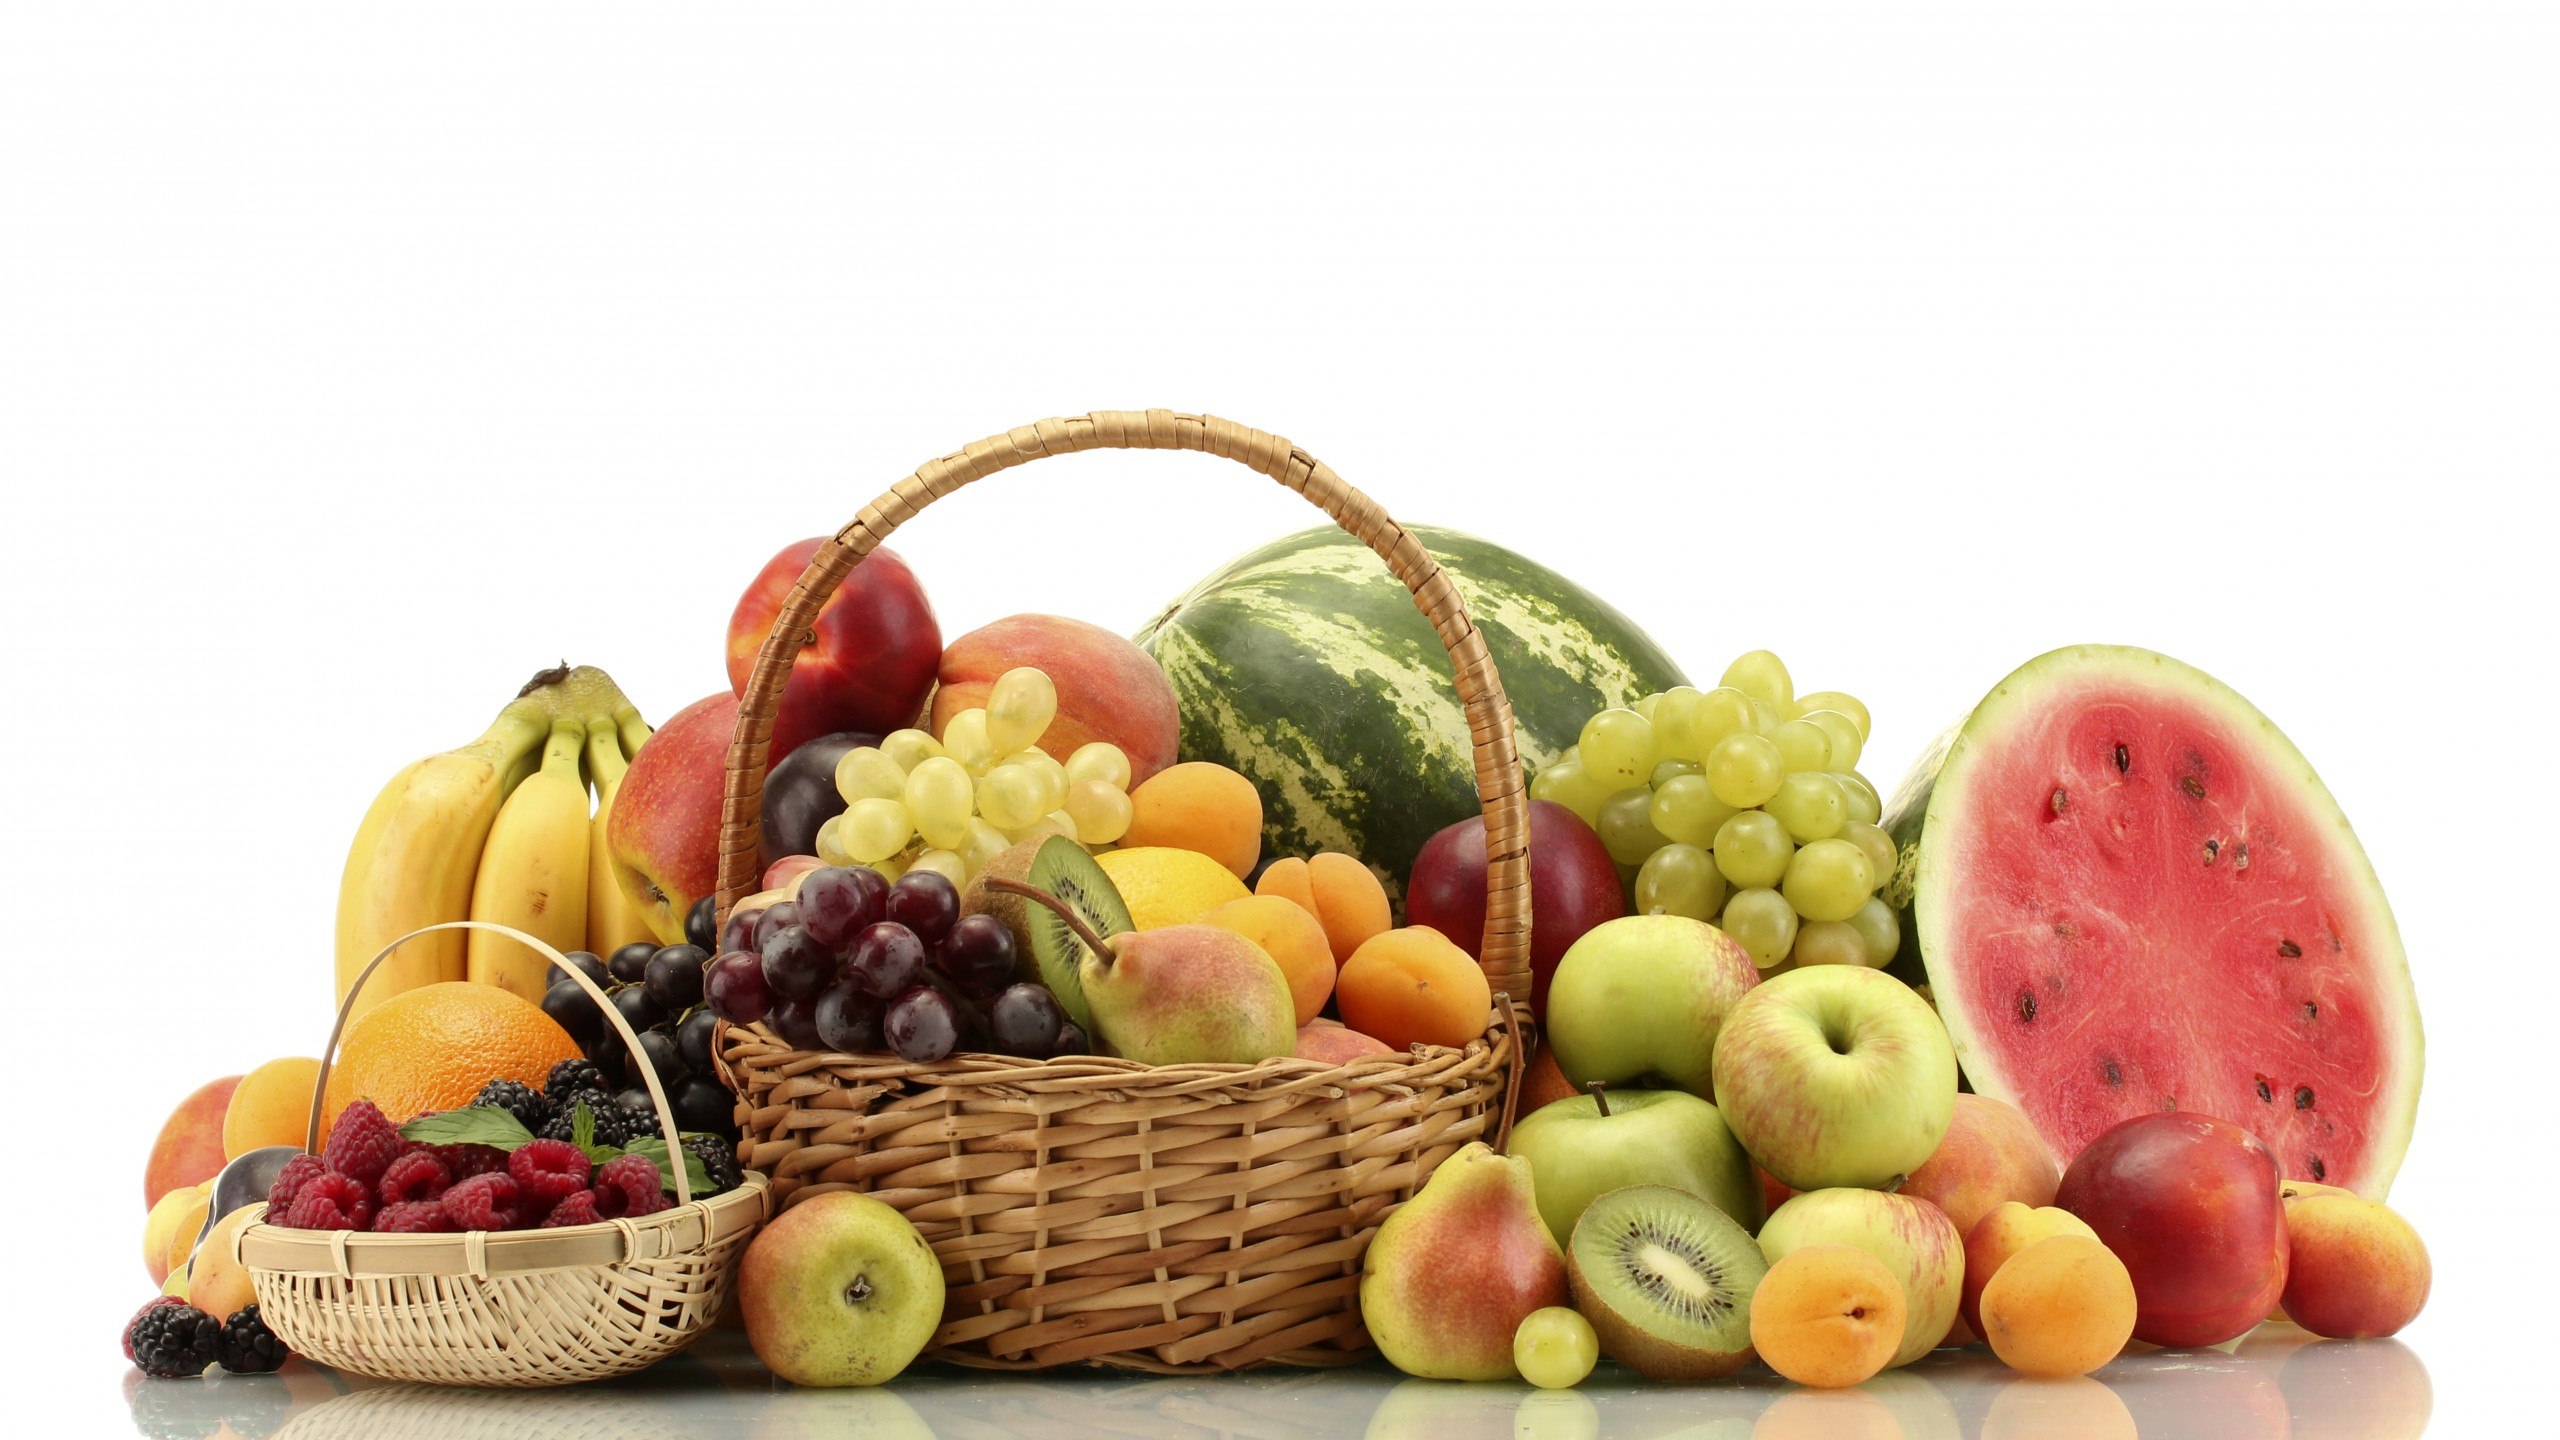 ماهانه چند کیلو میوه مصرف کنیم؟